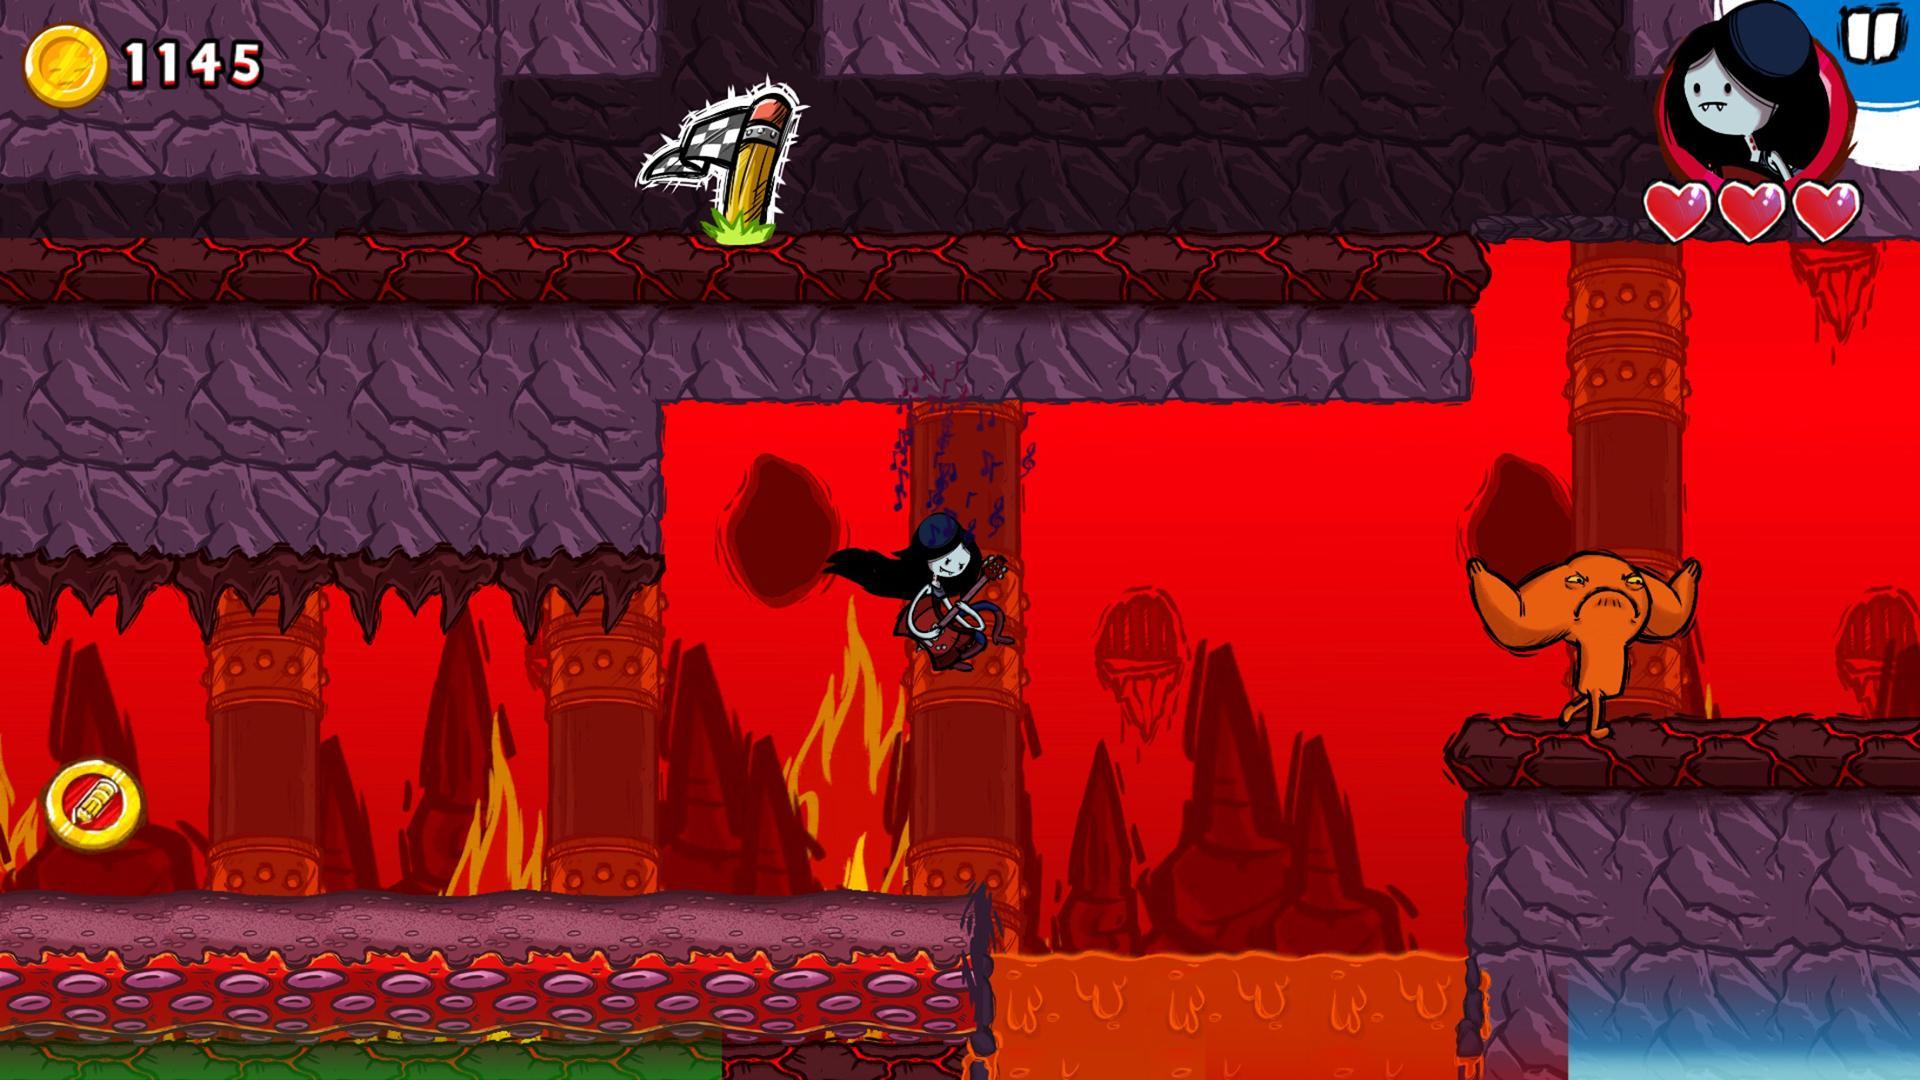 Screenshot 1 of Mago del gioco Adventure Time 